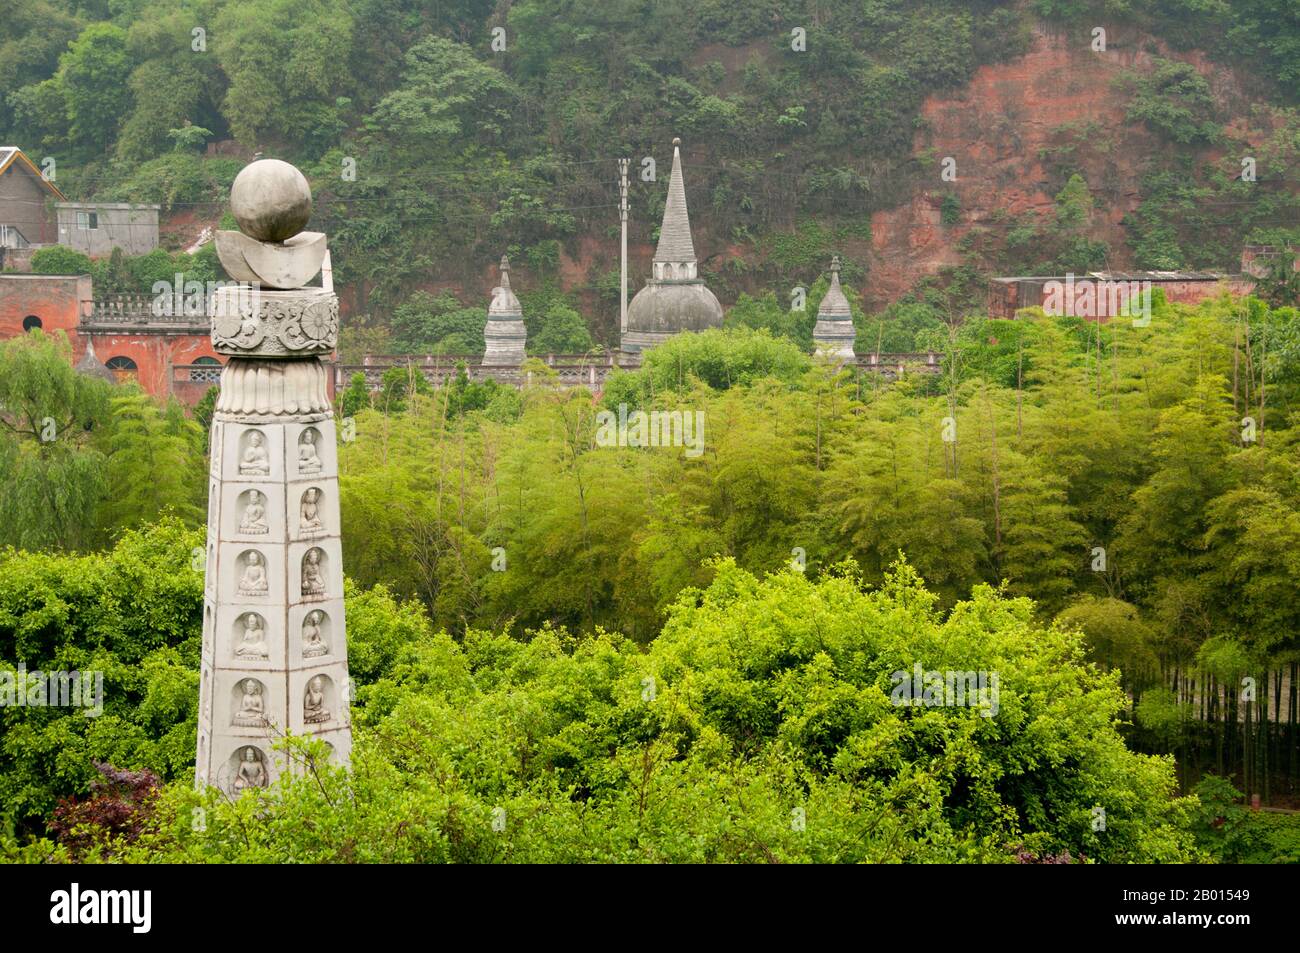 Chine : stupas, Lingyun Shan (colline de nuages), Leshan, province du Sichuan. Le parc du Bouddha oriental, proche du célèbre Grand Bouddha de Leshan (Da fo), contient une collection variée de statues de Bouddha de toute l'Asie. Banque D'Images